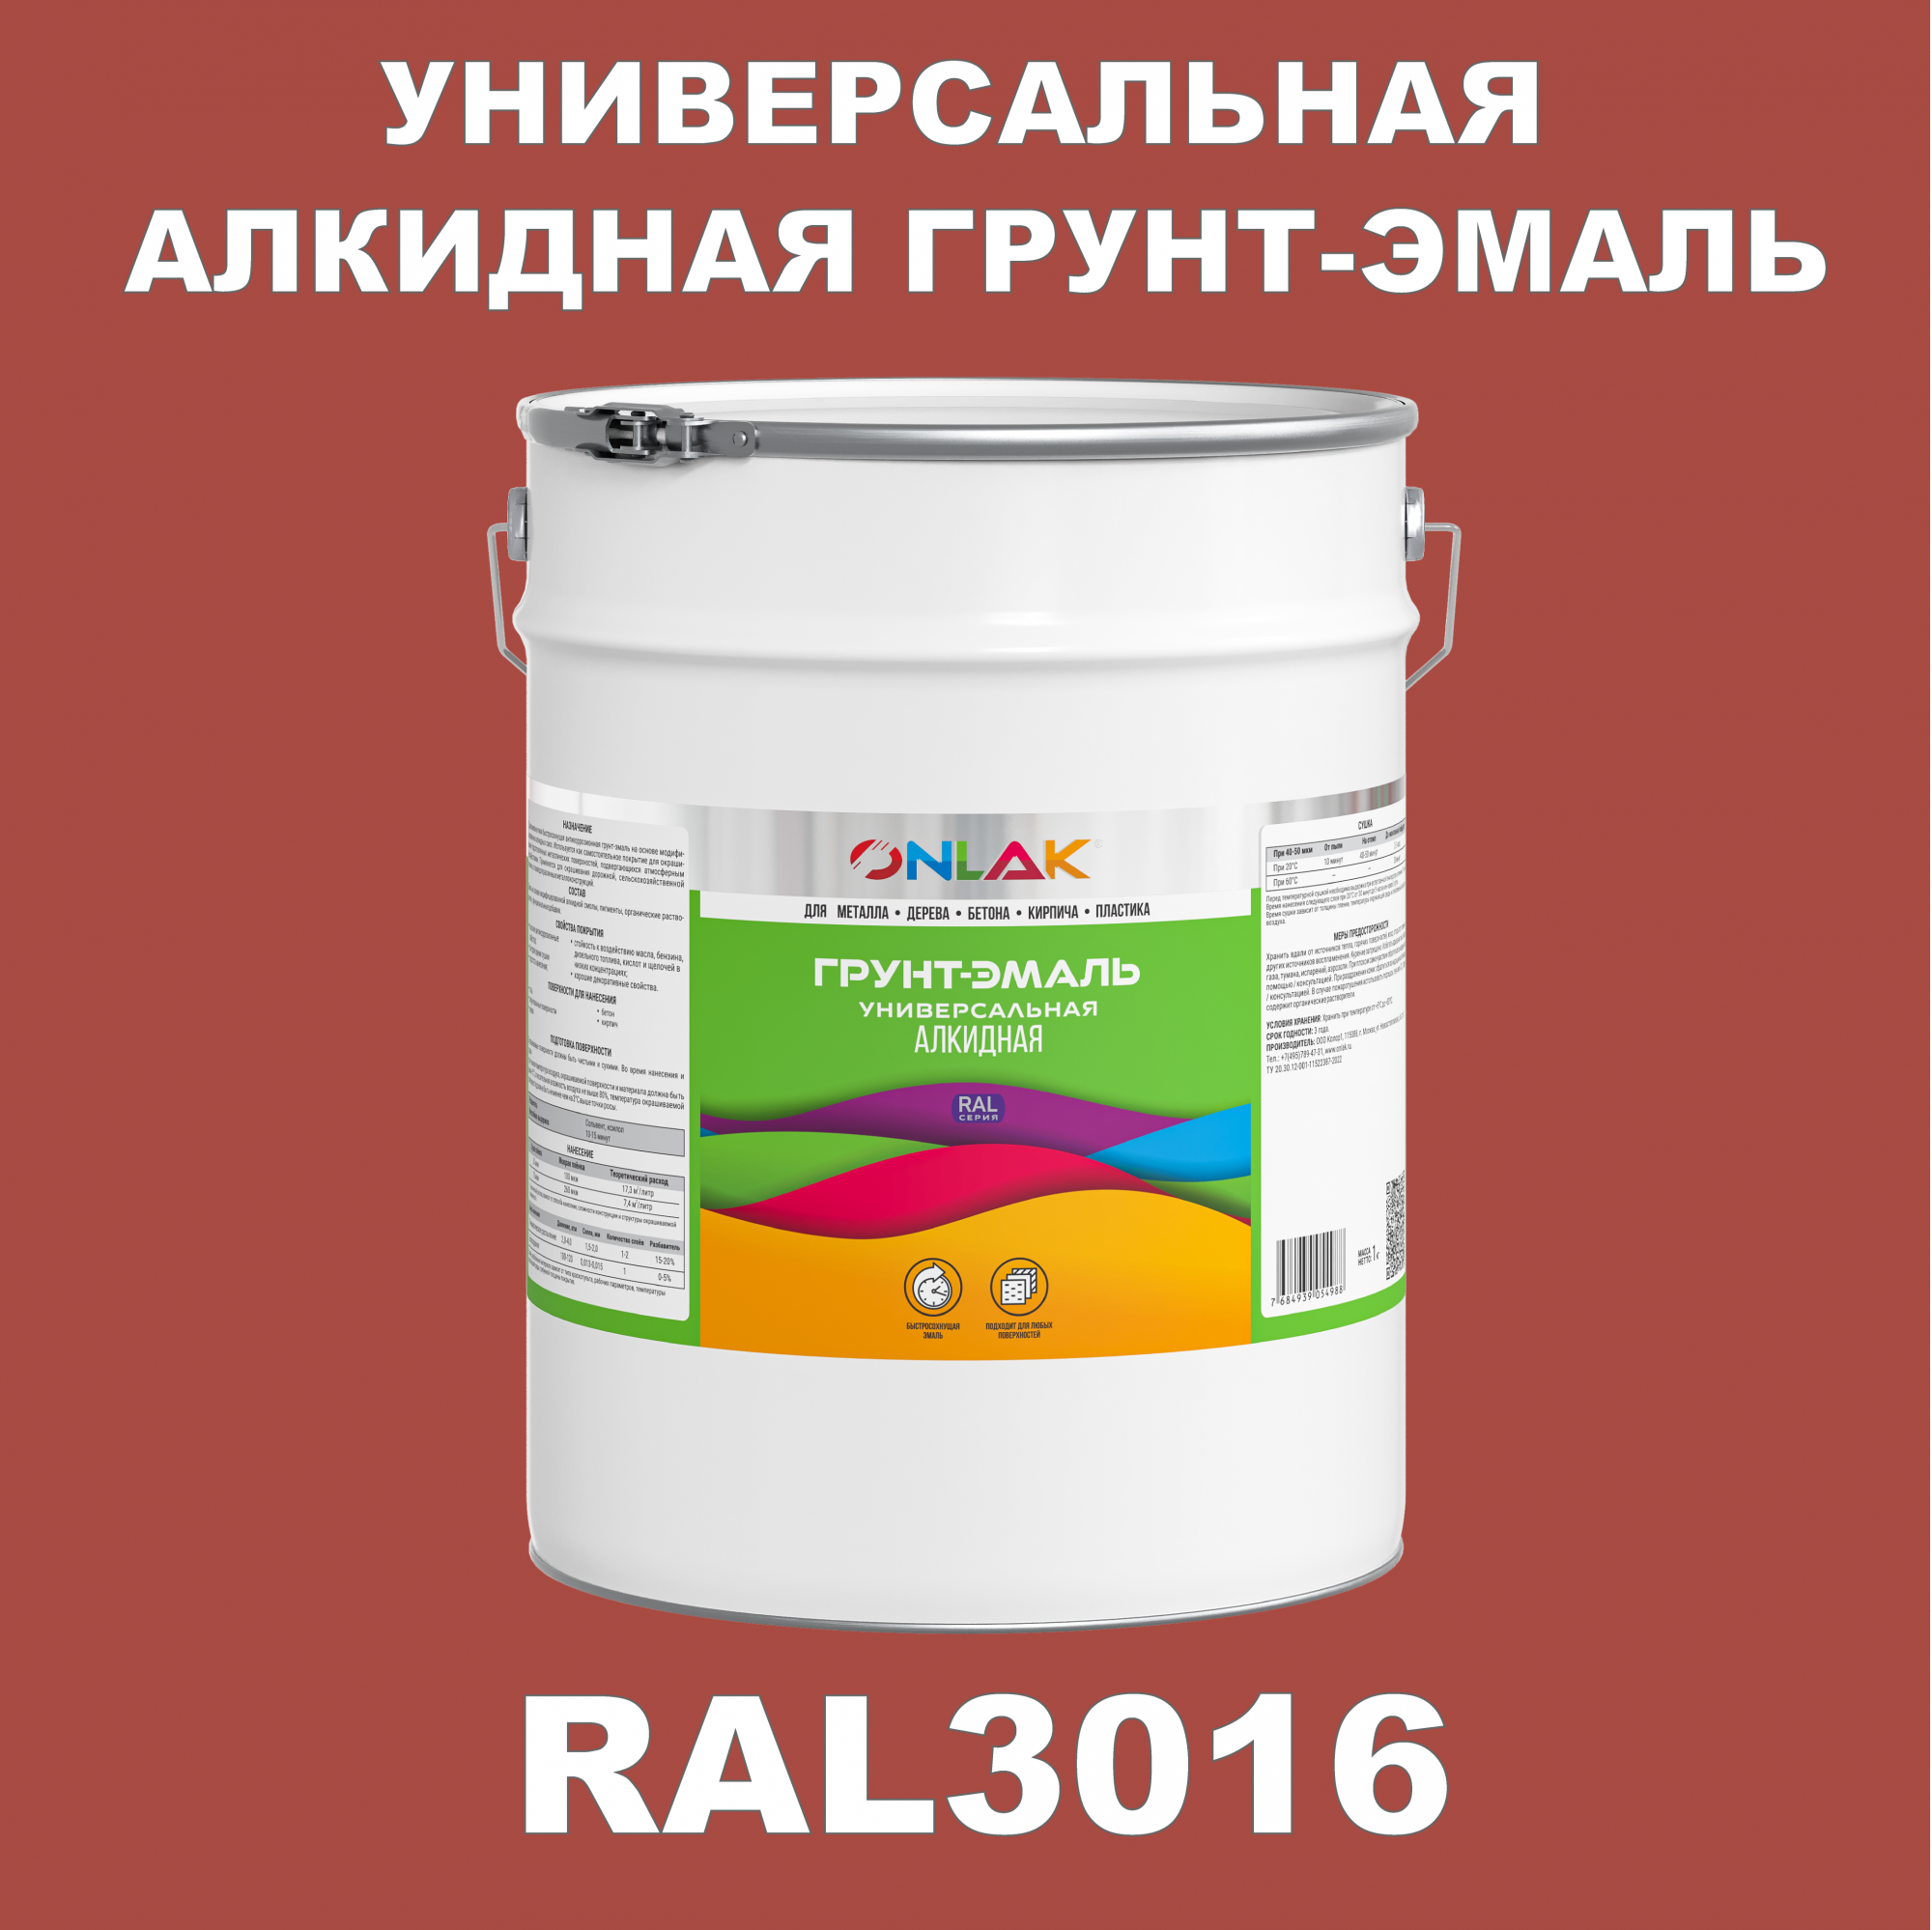 Грунт-эмаль ONLAK 1К RAL3016 антикоррозионная алкидная по металлу по ржавчине 20 кг грунт эмаль престиж по ржавчине алкидная зеленая 1 9 кг